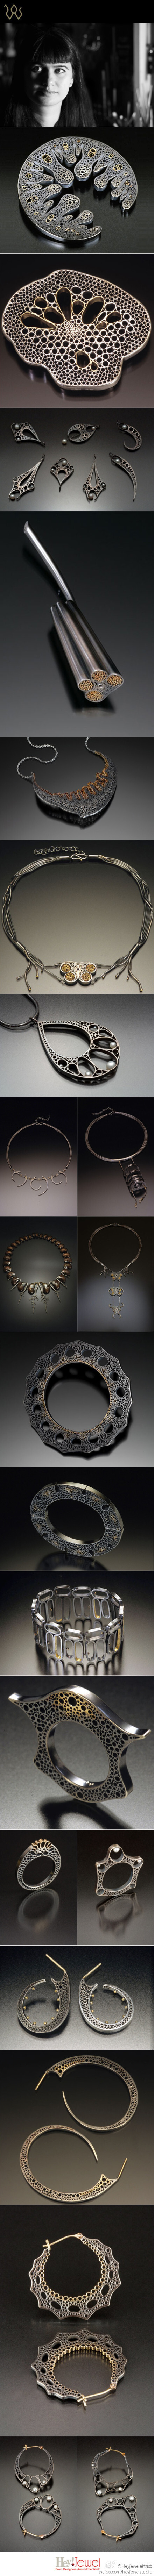 Vina Rust来自美国西雅图，对事物内部空间的好奇使她将创作焦点集中于本质探索，并通过切片形式展现其内在结构。除植物图鉴外，英国画家Arthur Rackham和Aubrey Beardsley，法国的Lalique珠宝，东南亚、澳洲的民族饰品都为Vina带来灵感，对自然的观察和对美丽与威胁并存的欣赏造就了她的独特创作。